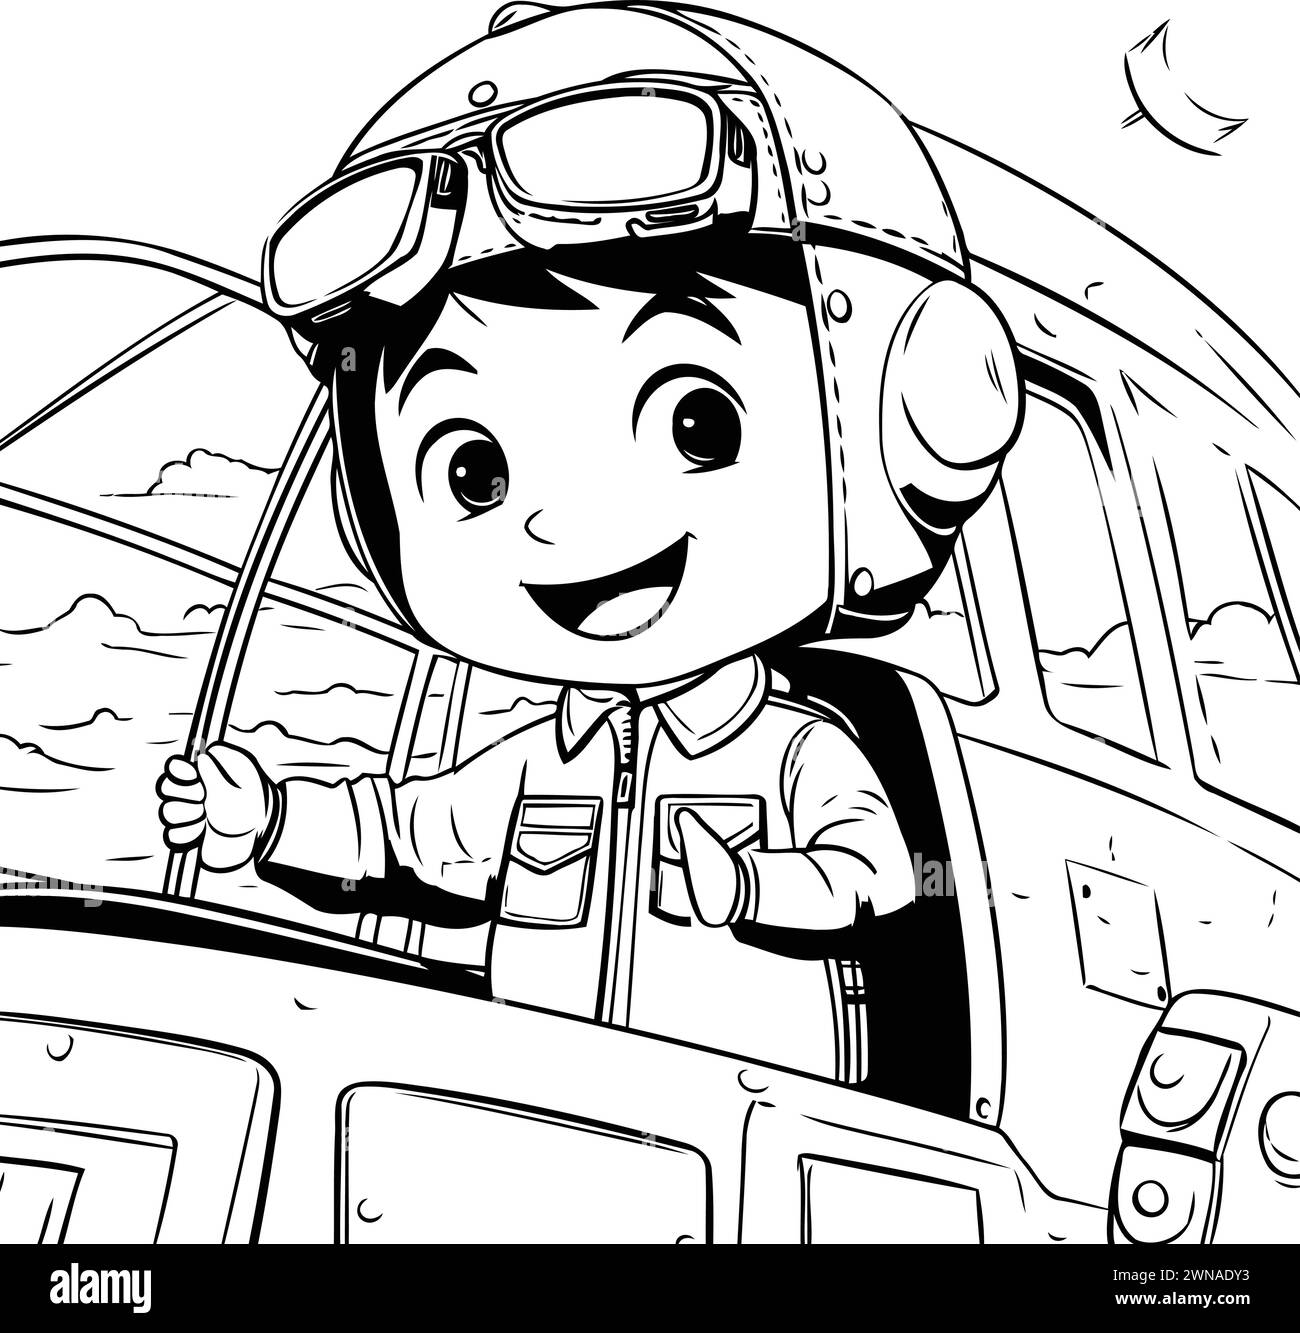 Schwarz-weiß-Zeichentrickfigur eines glücklichen Jungen Piloten mit Pilotenmütze und Pilotenhelm Stock Vektor